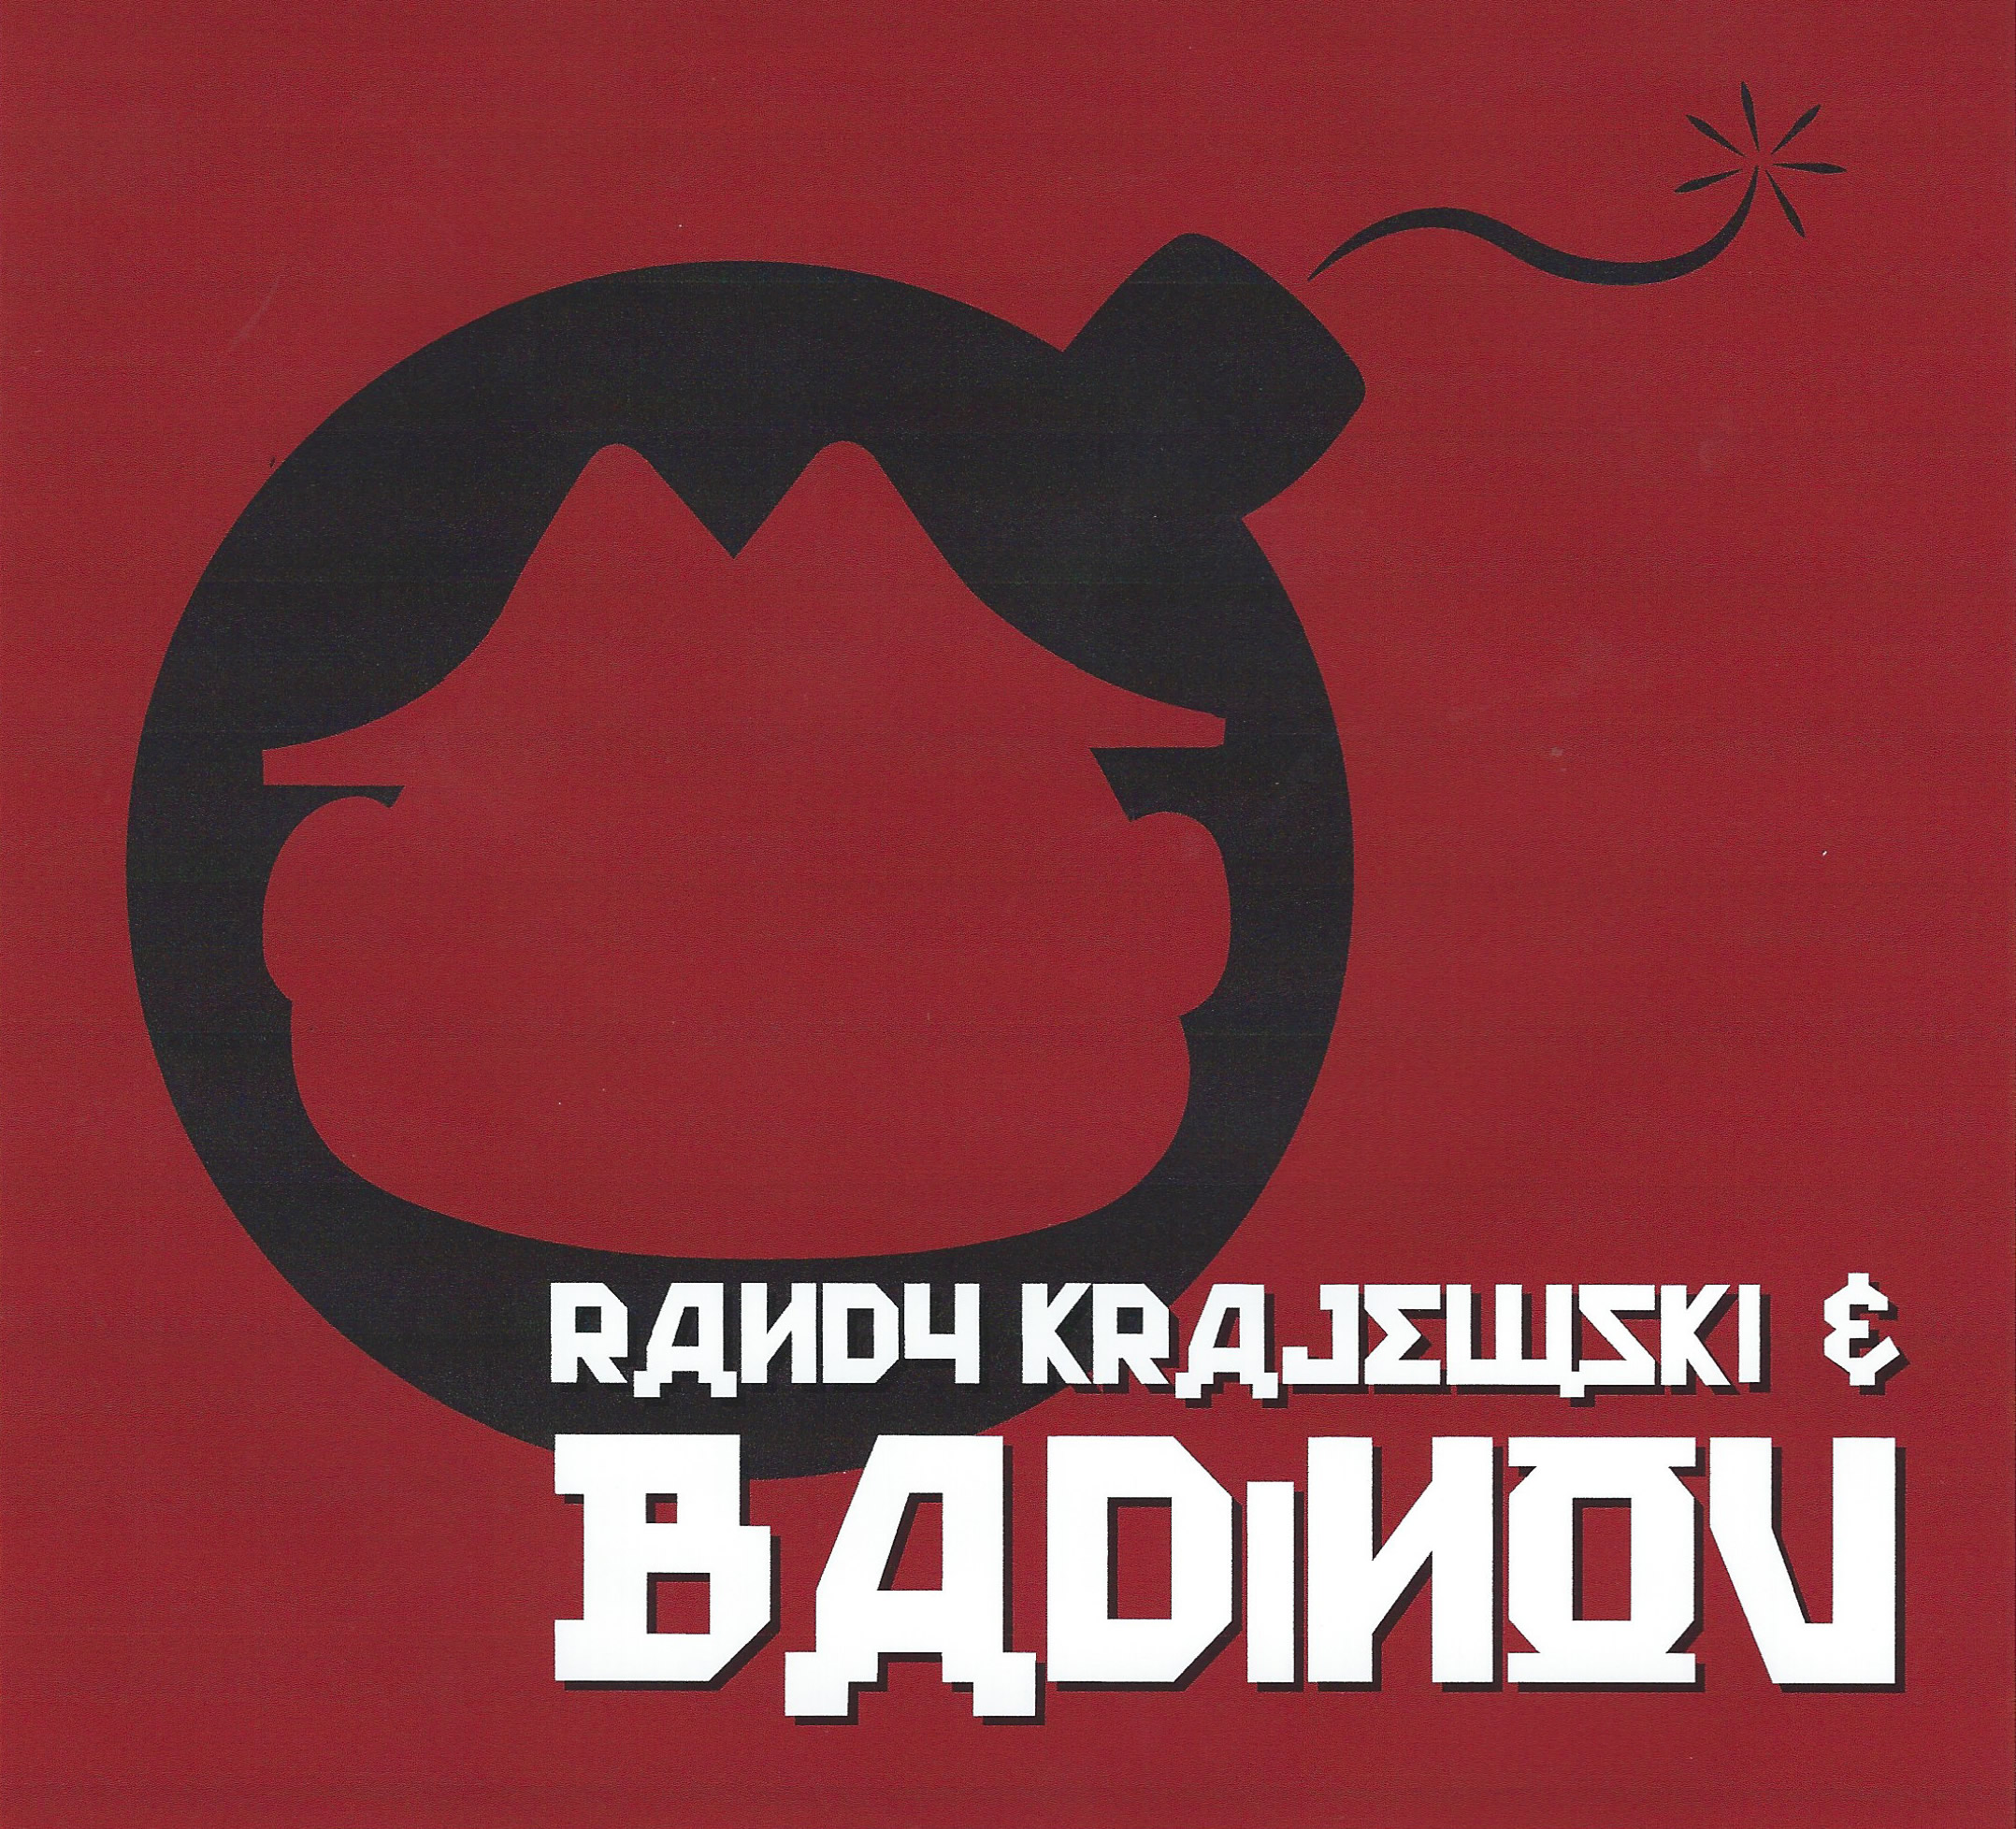 Badinov